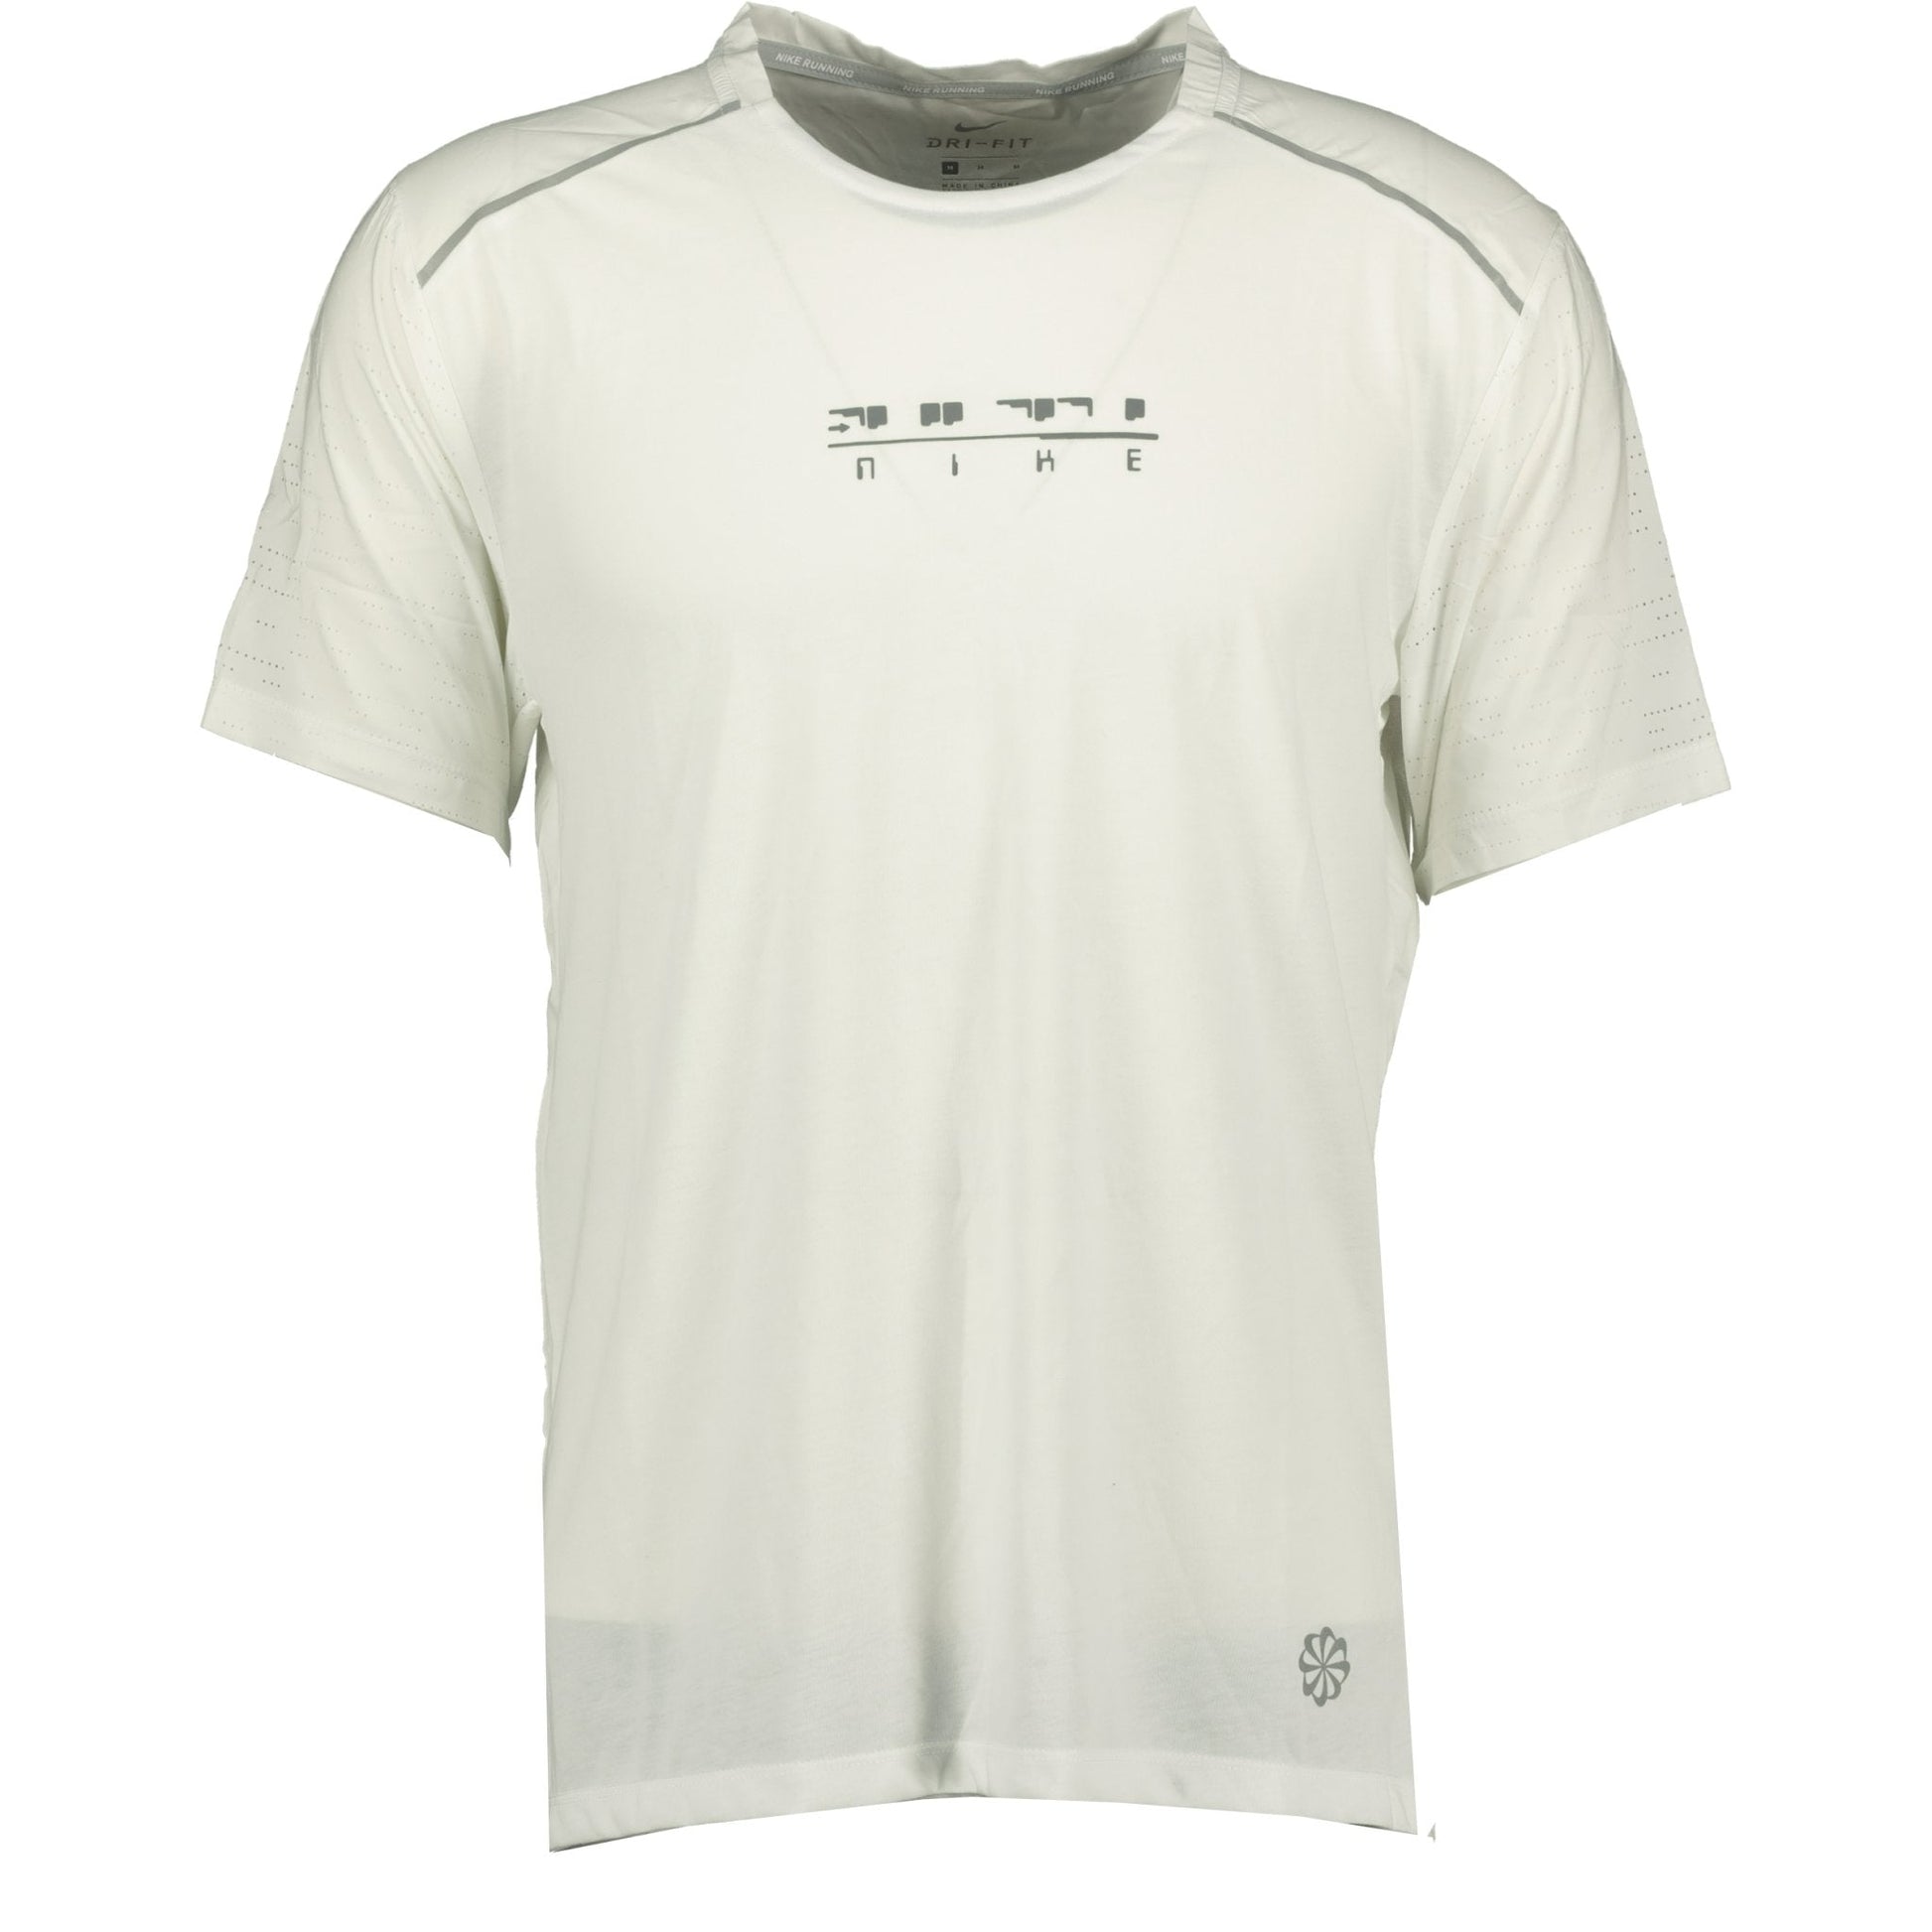 Nike Dri-Fit T-Shirt White - LinkFashionco